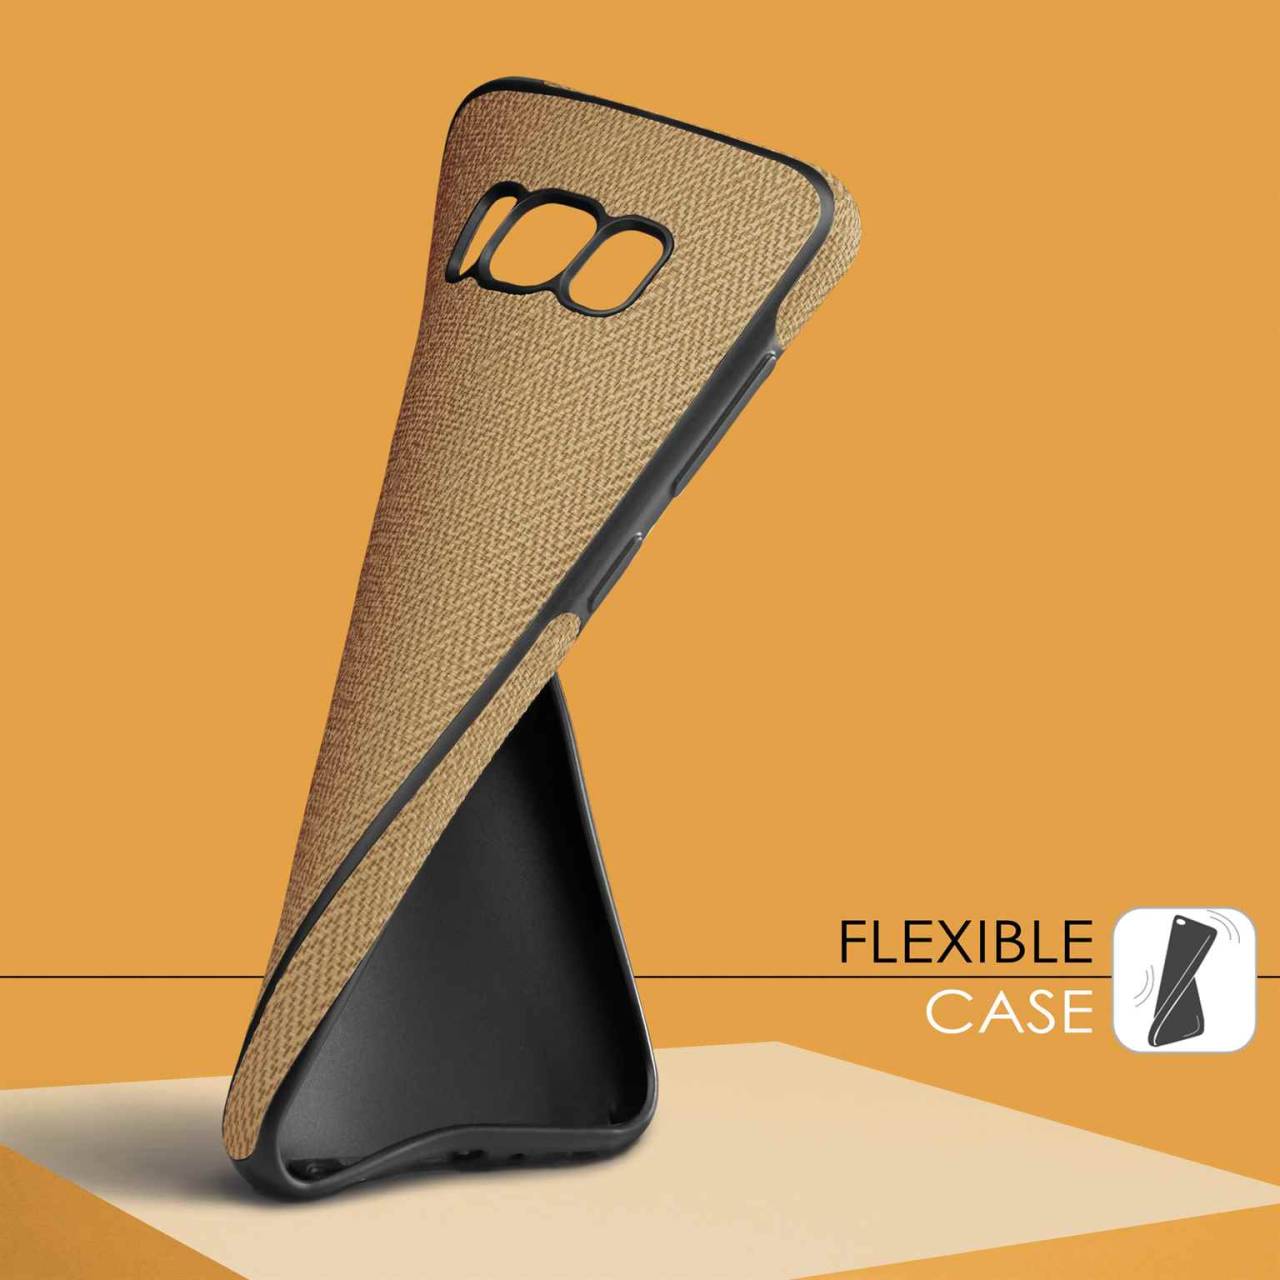 moex Chevron Case für Samsung Galaxy S6 Edge – Flexible Hülle mit erhöhtem Rand für optimalen Schutz